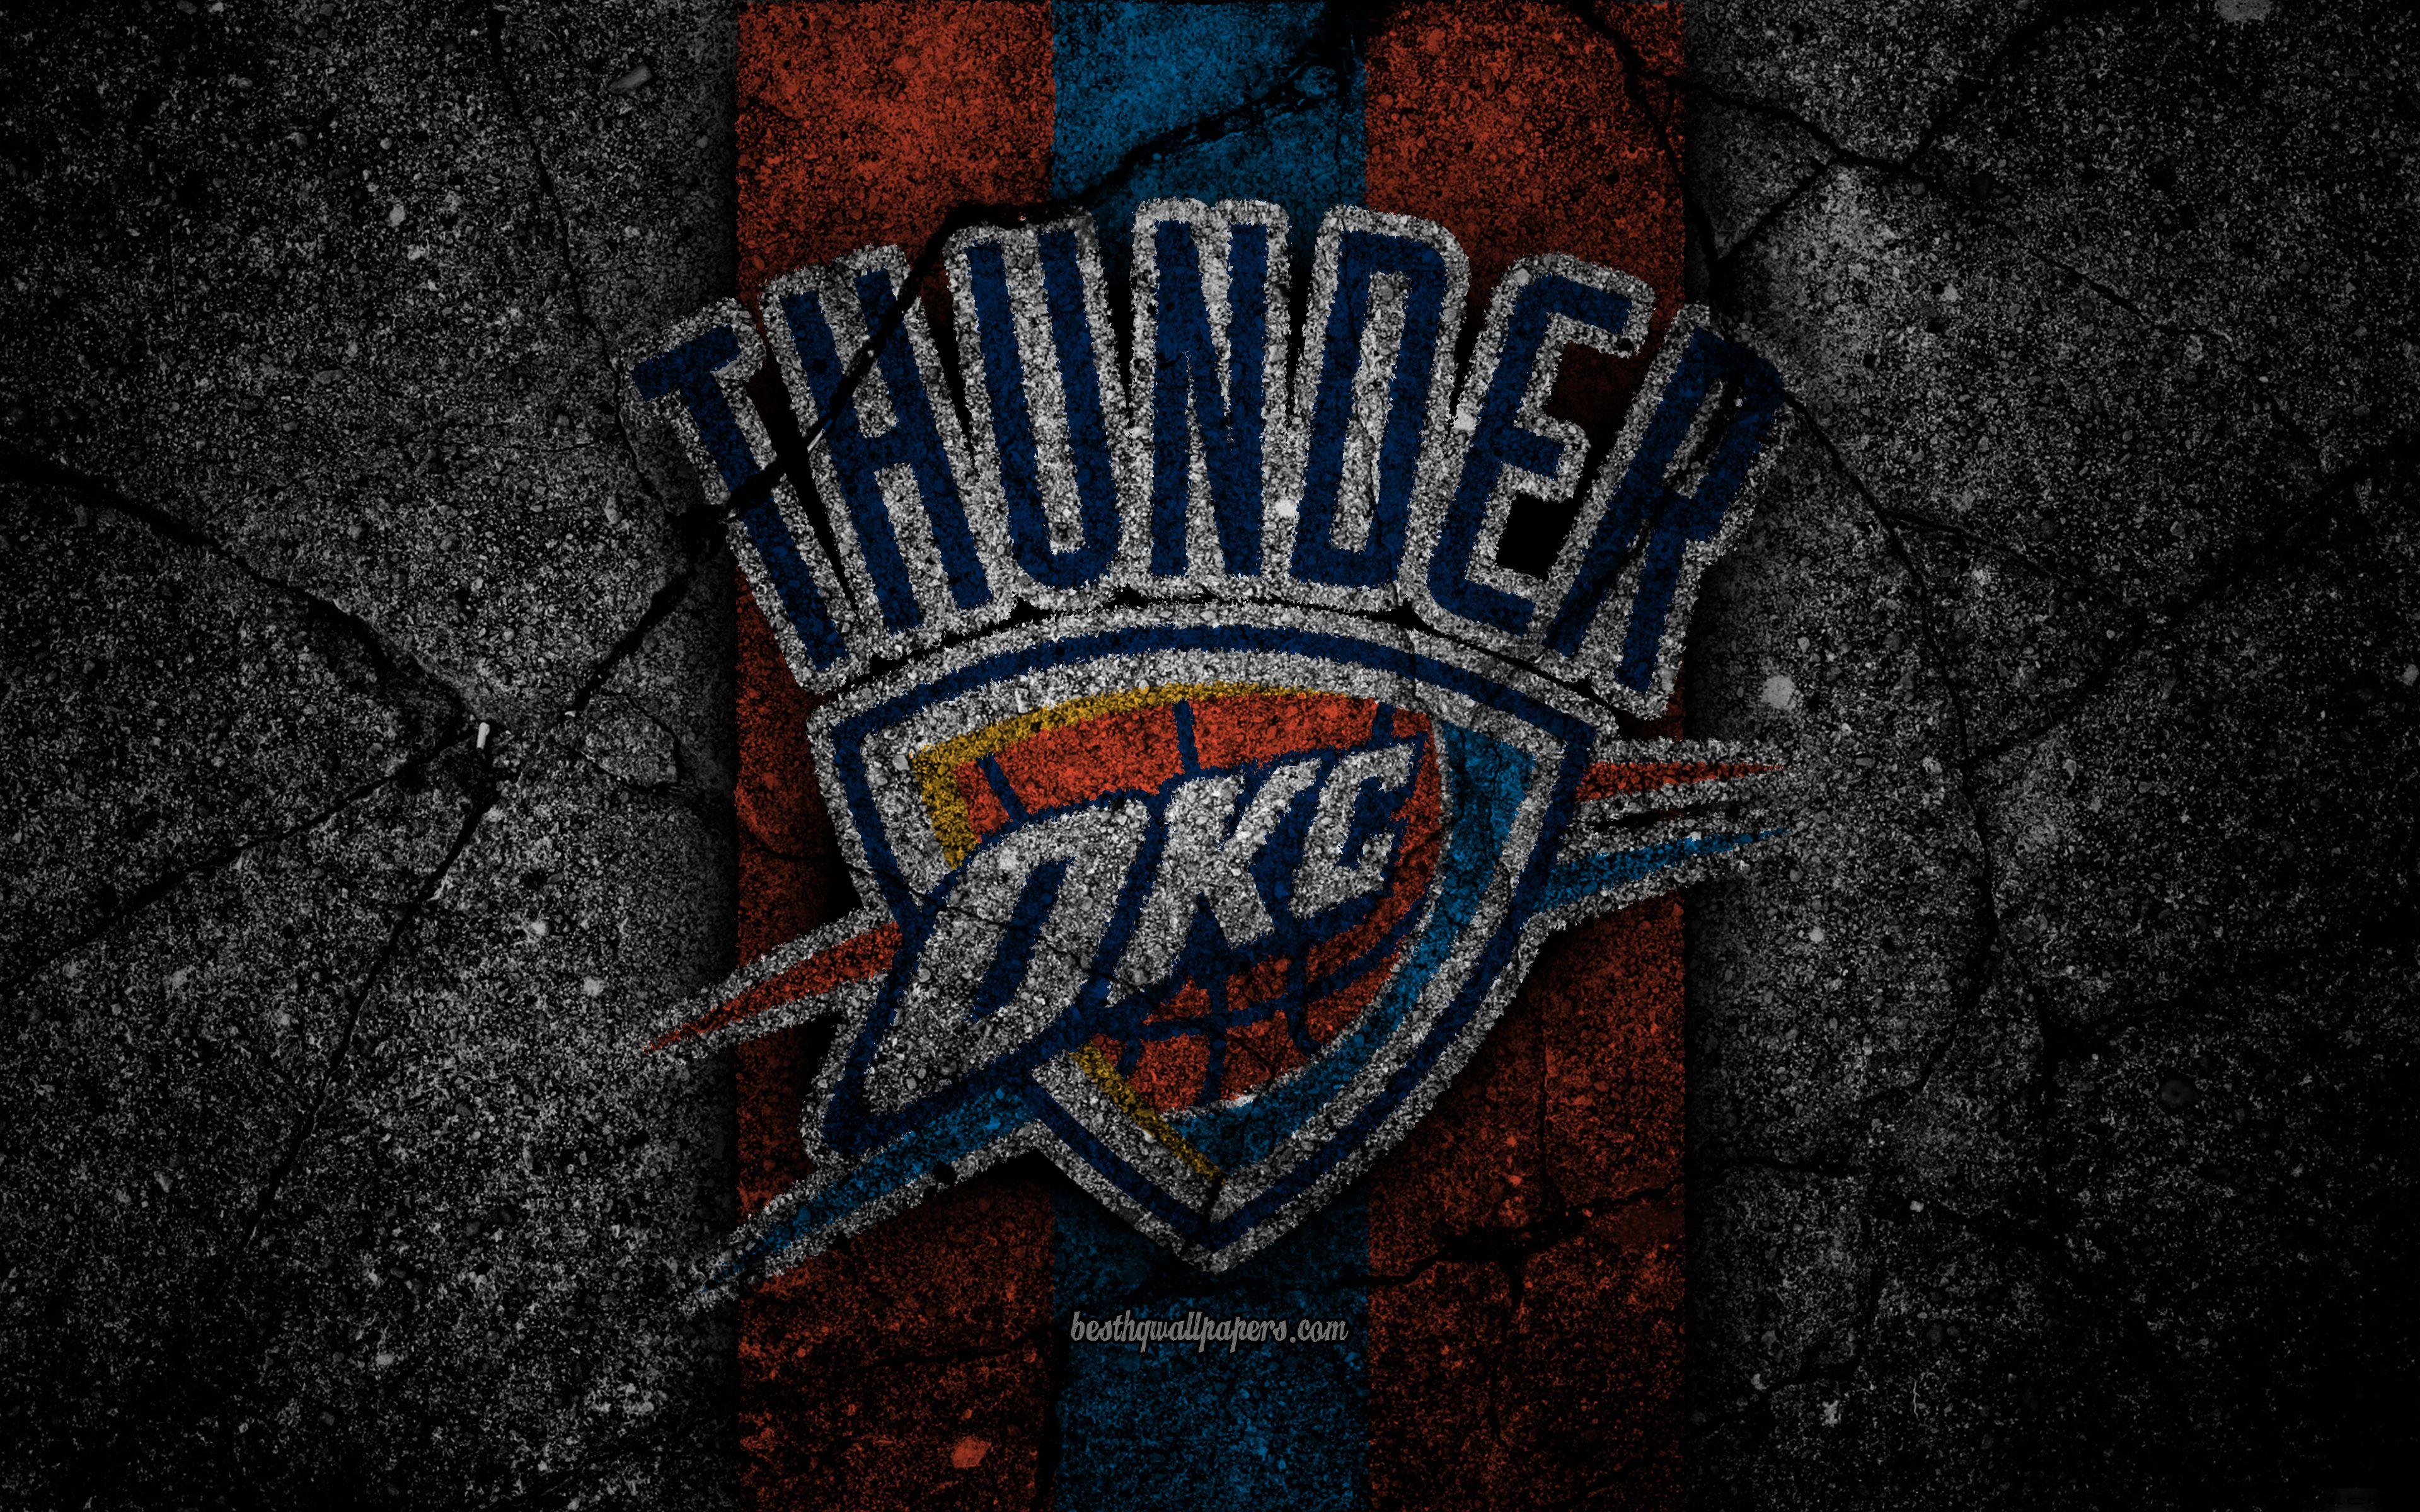 Oklahoma City Thunder Wallpaper by Robert Cooper on Dribbble